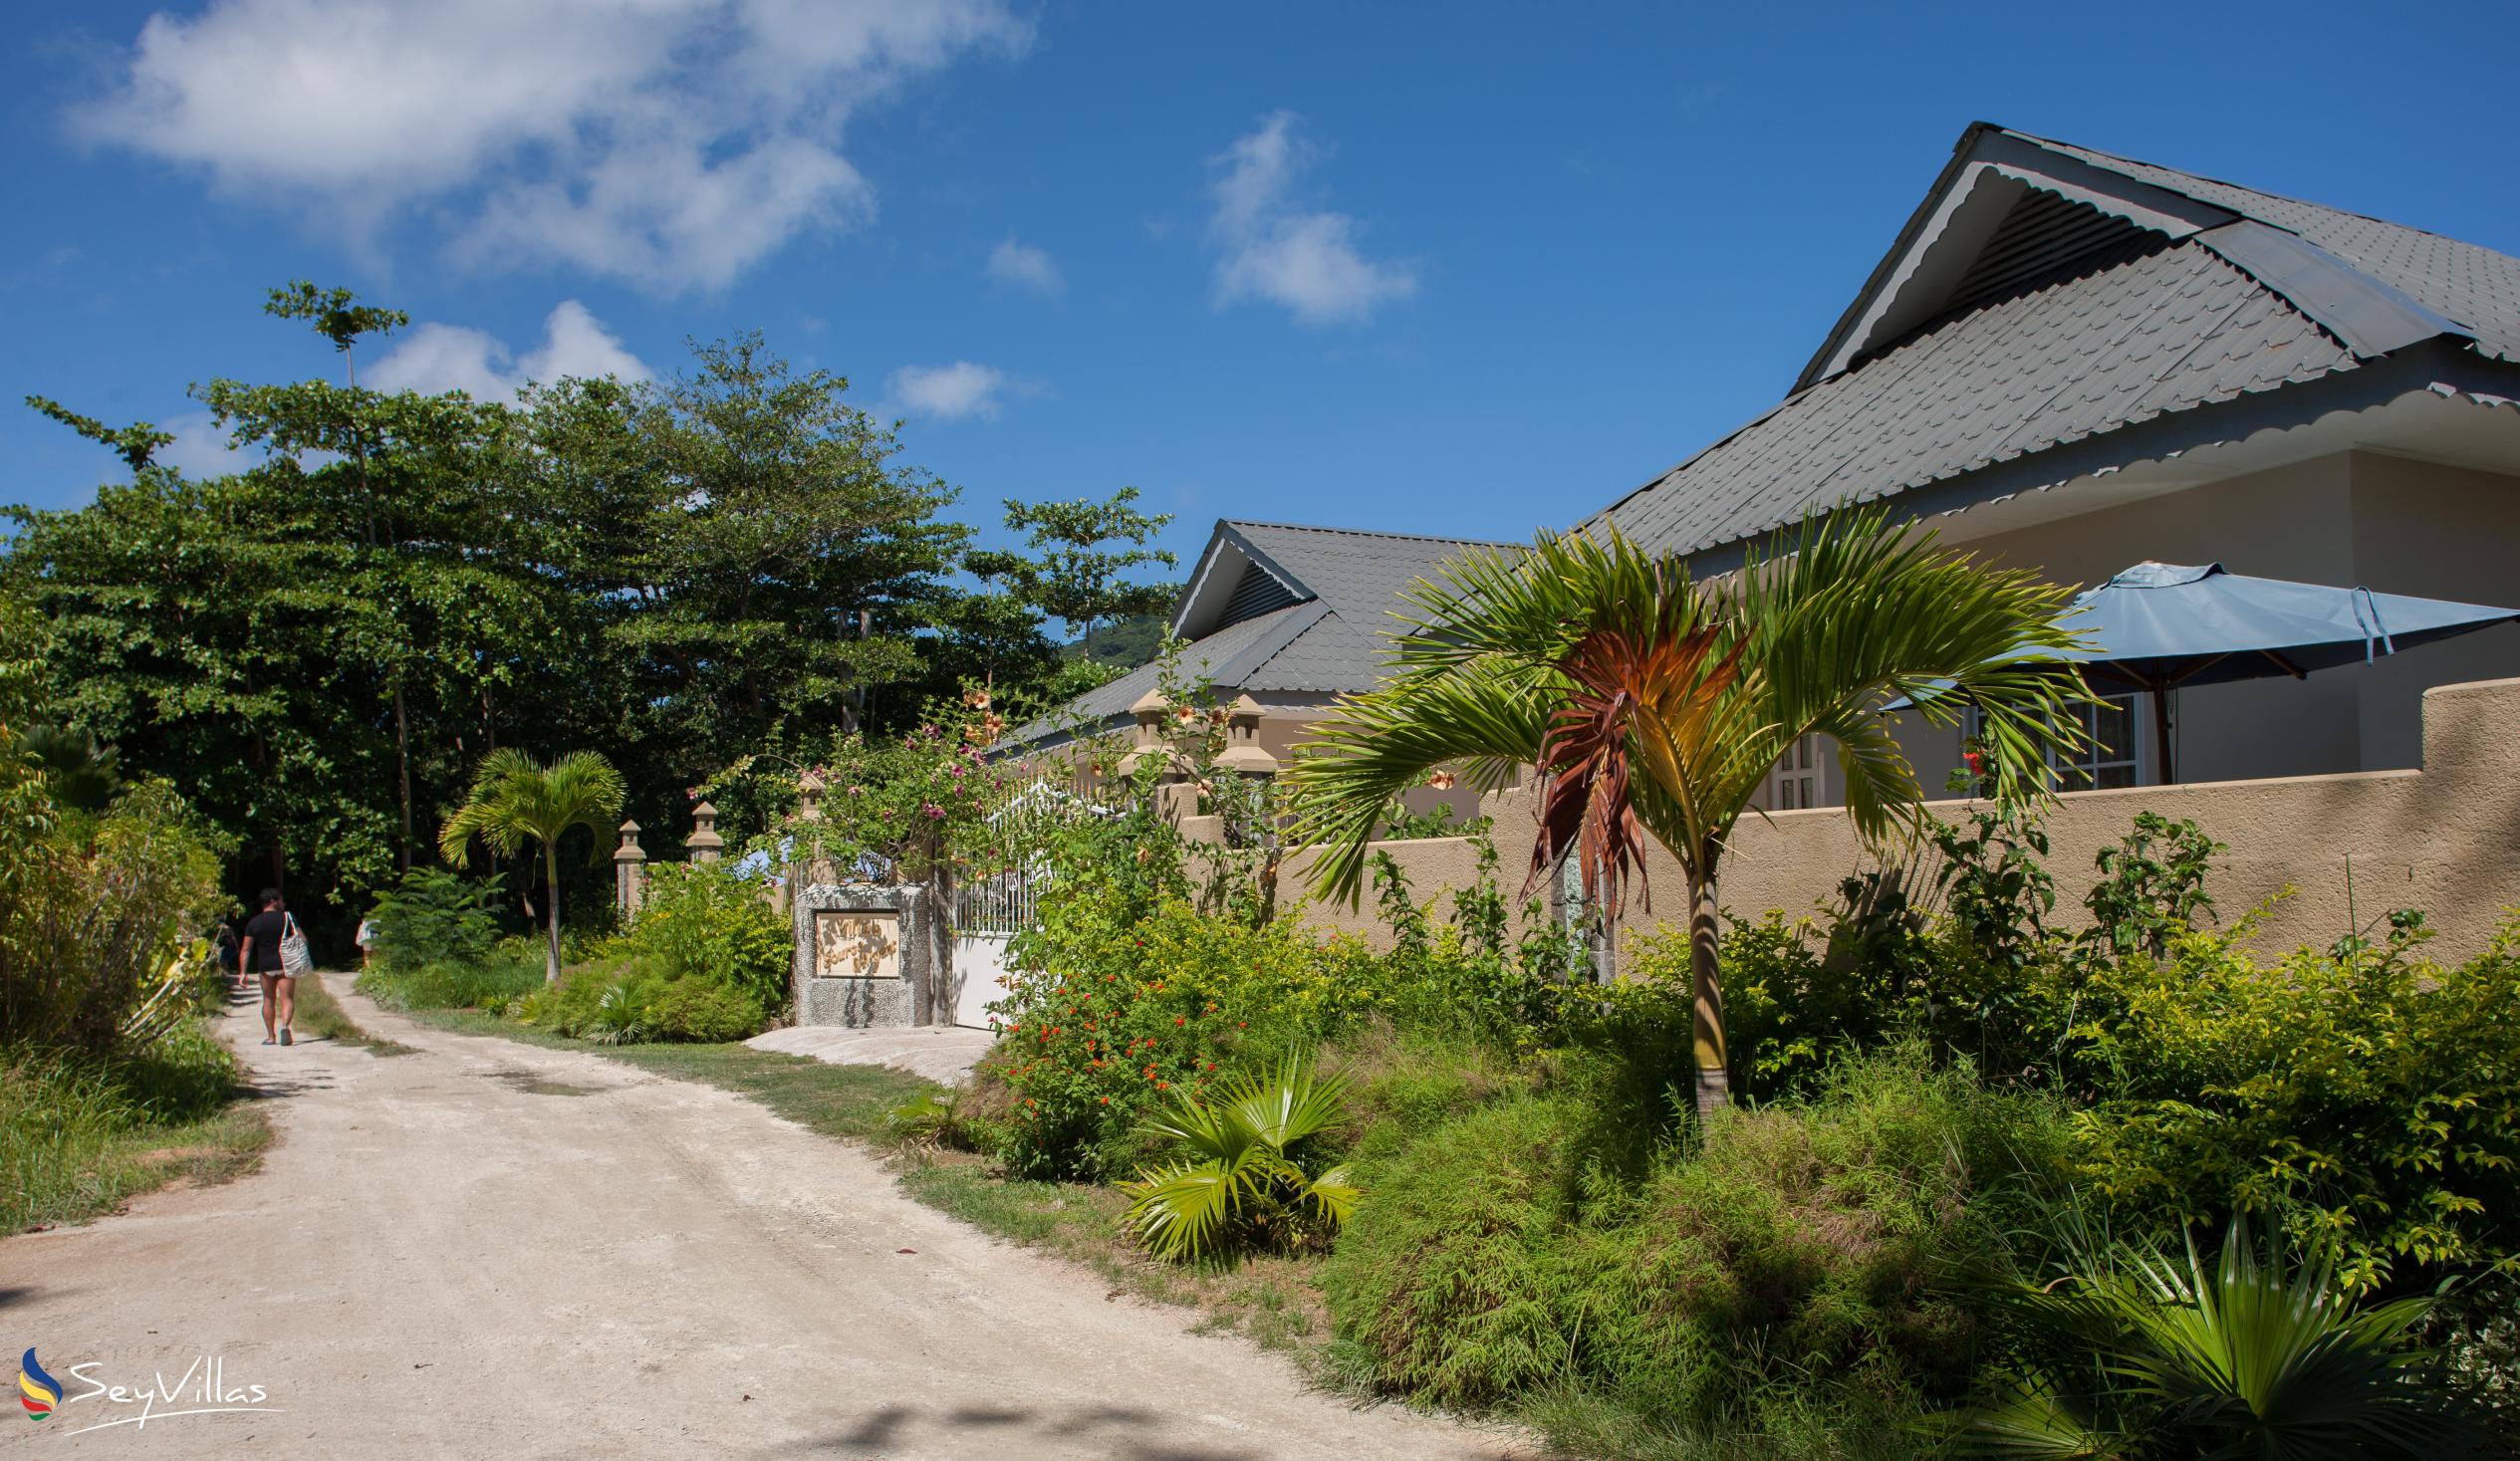 Photo 3: Villa Source D'Argent - Outdoor area - La Digue (Seychelles)